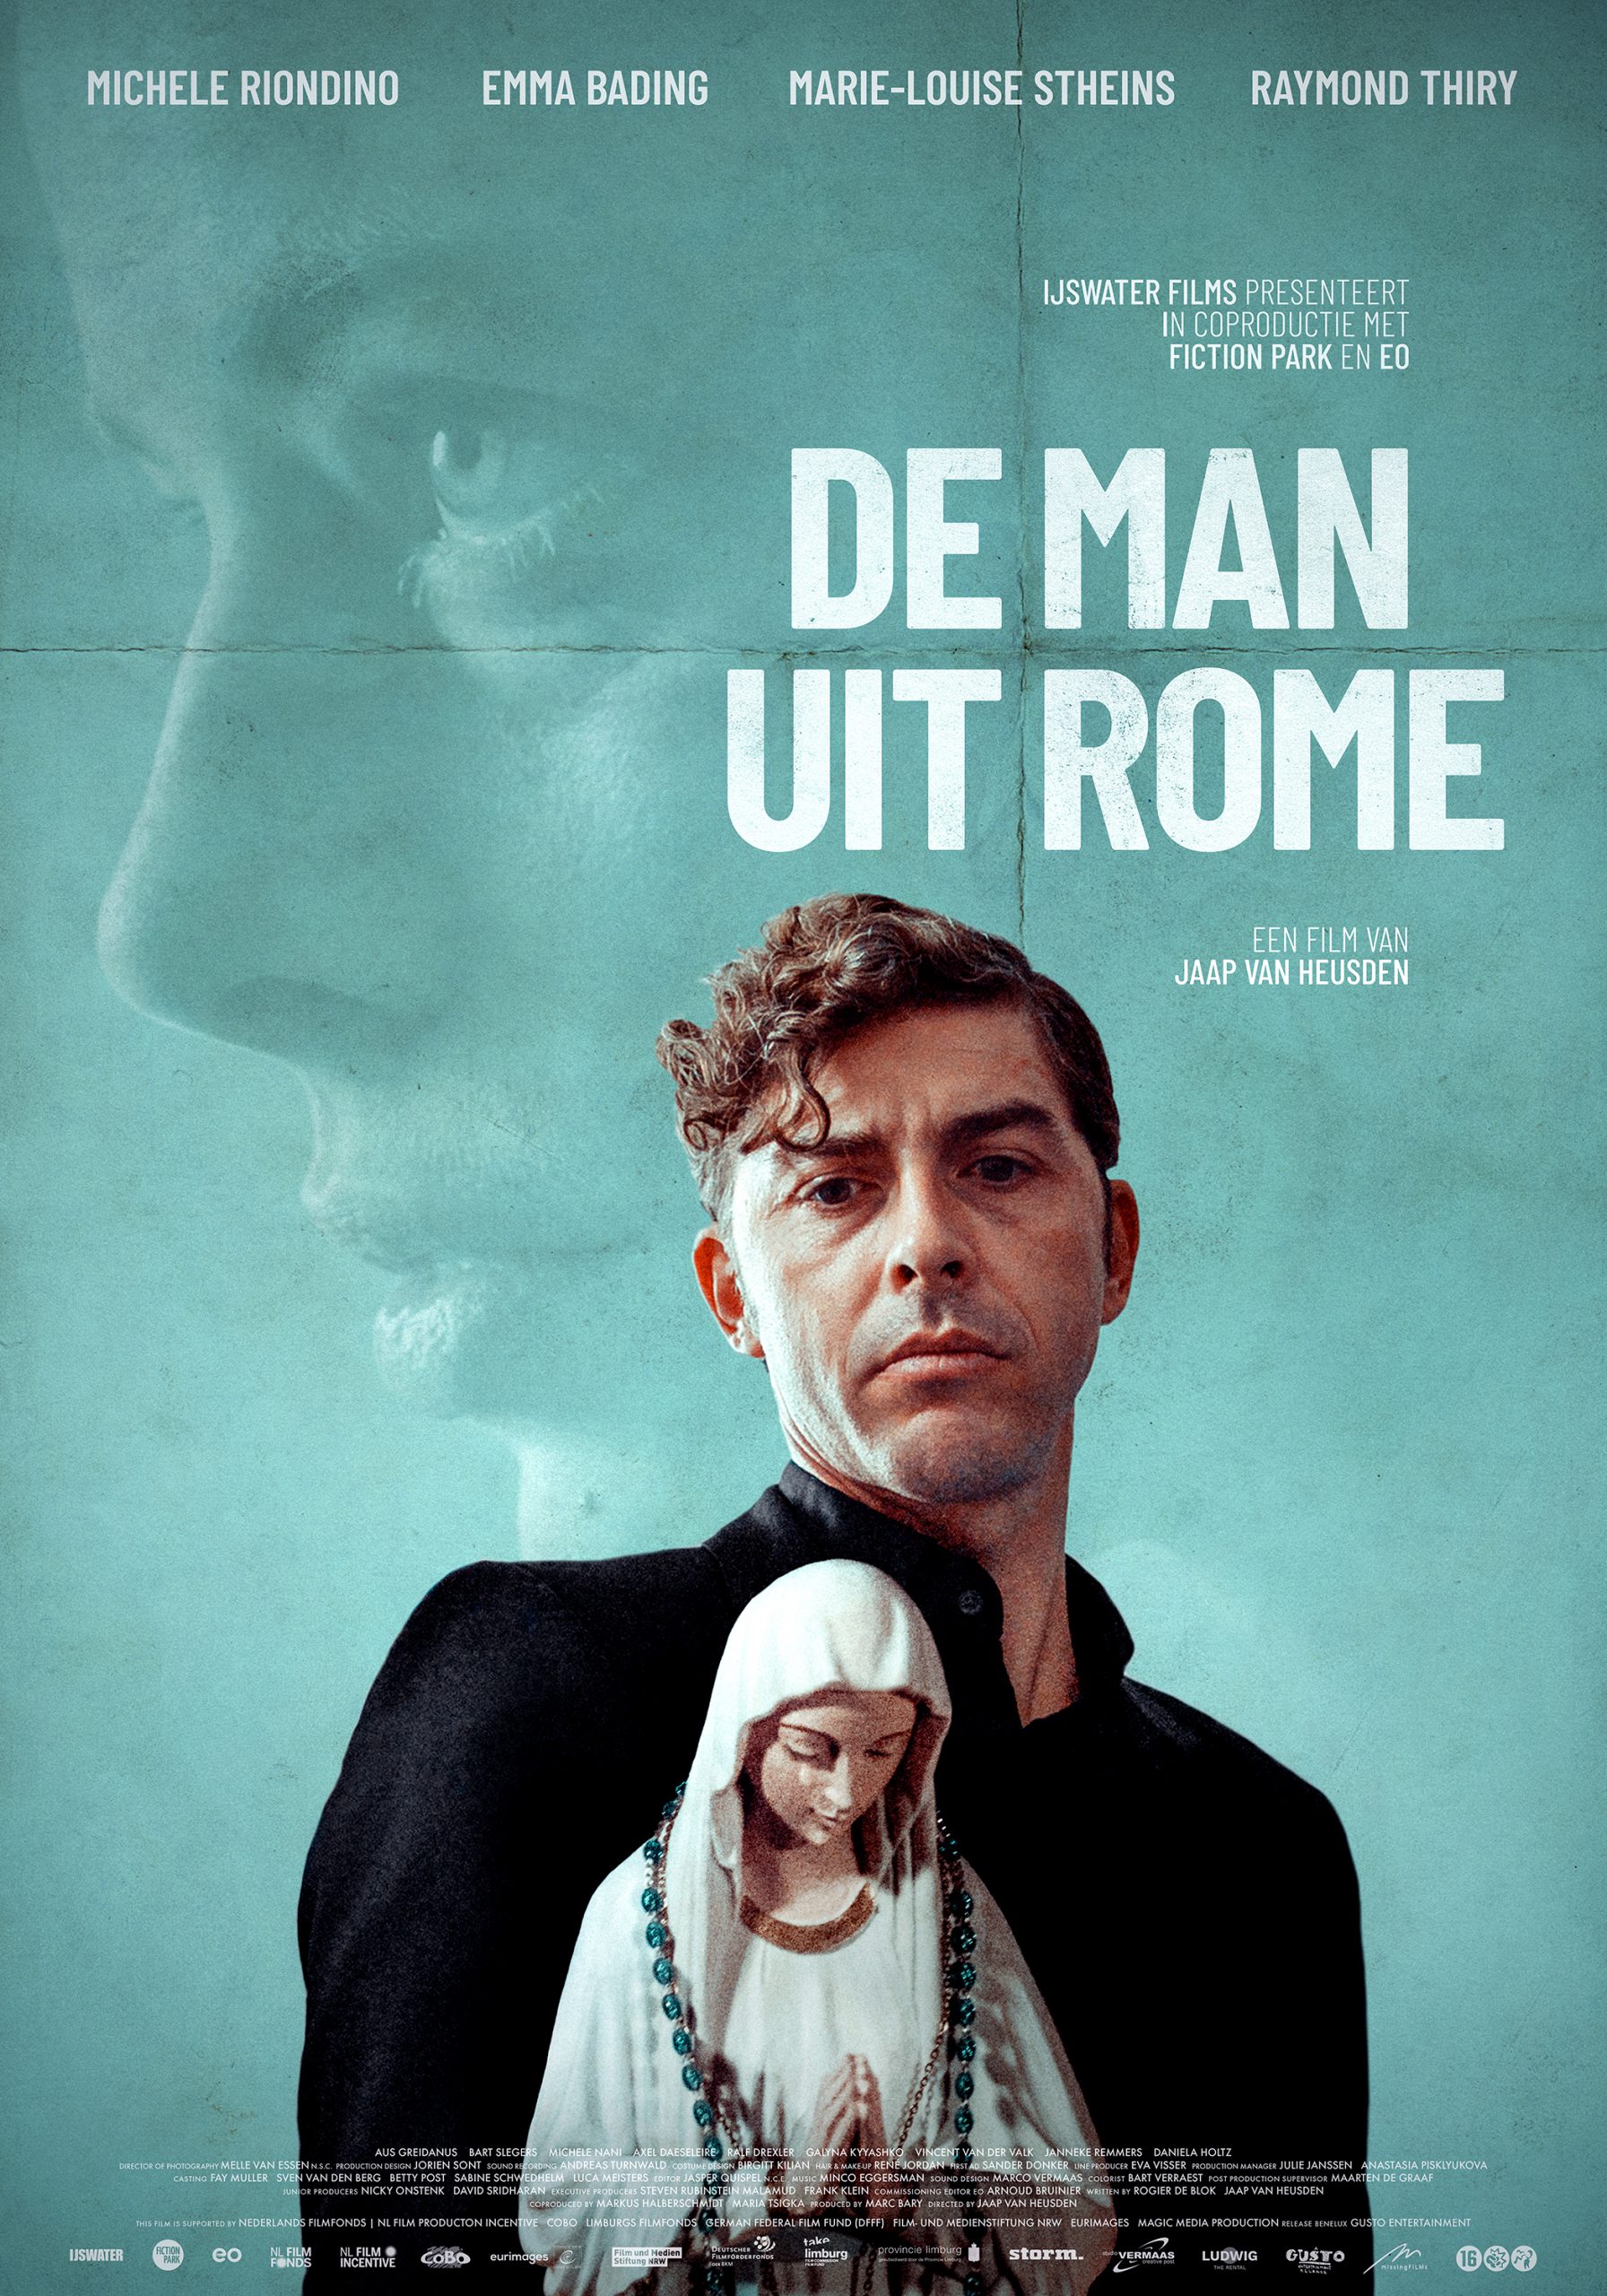 NIEUWE FILM IN AANTOCHT: DE MAN UIT ROME